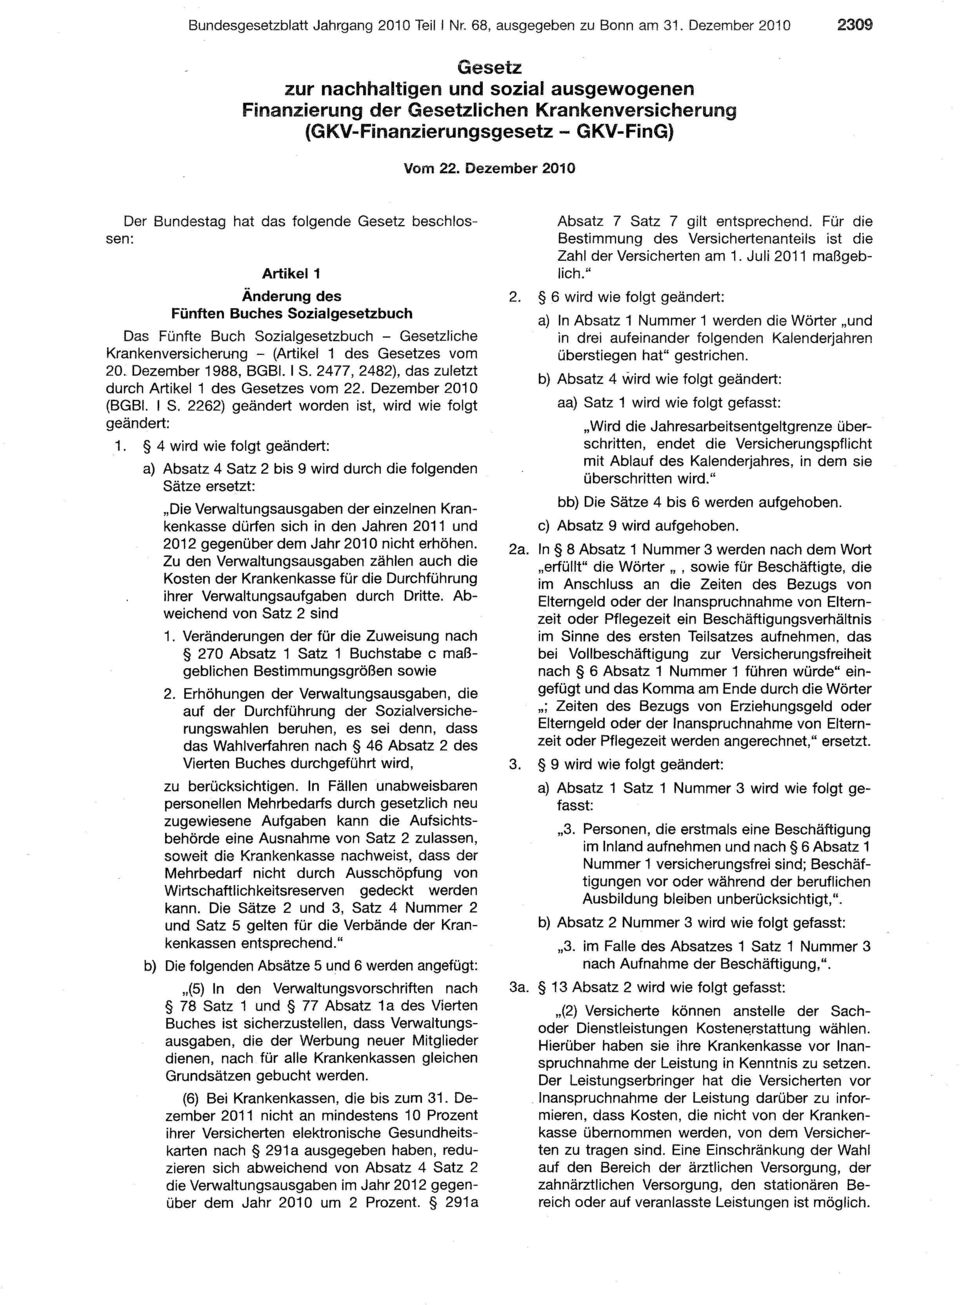 Dezember 2010 Der Bundestag hat das folgende Gesetz beschlossen: Artikel 1 Änderung des Fünften Buches Sozialgesetzbuch Das Fünfte Buch Sozialgesetzbuch - Gesetzliche Krankenversicherung - (Artikel 1